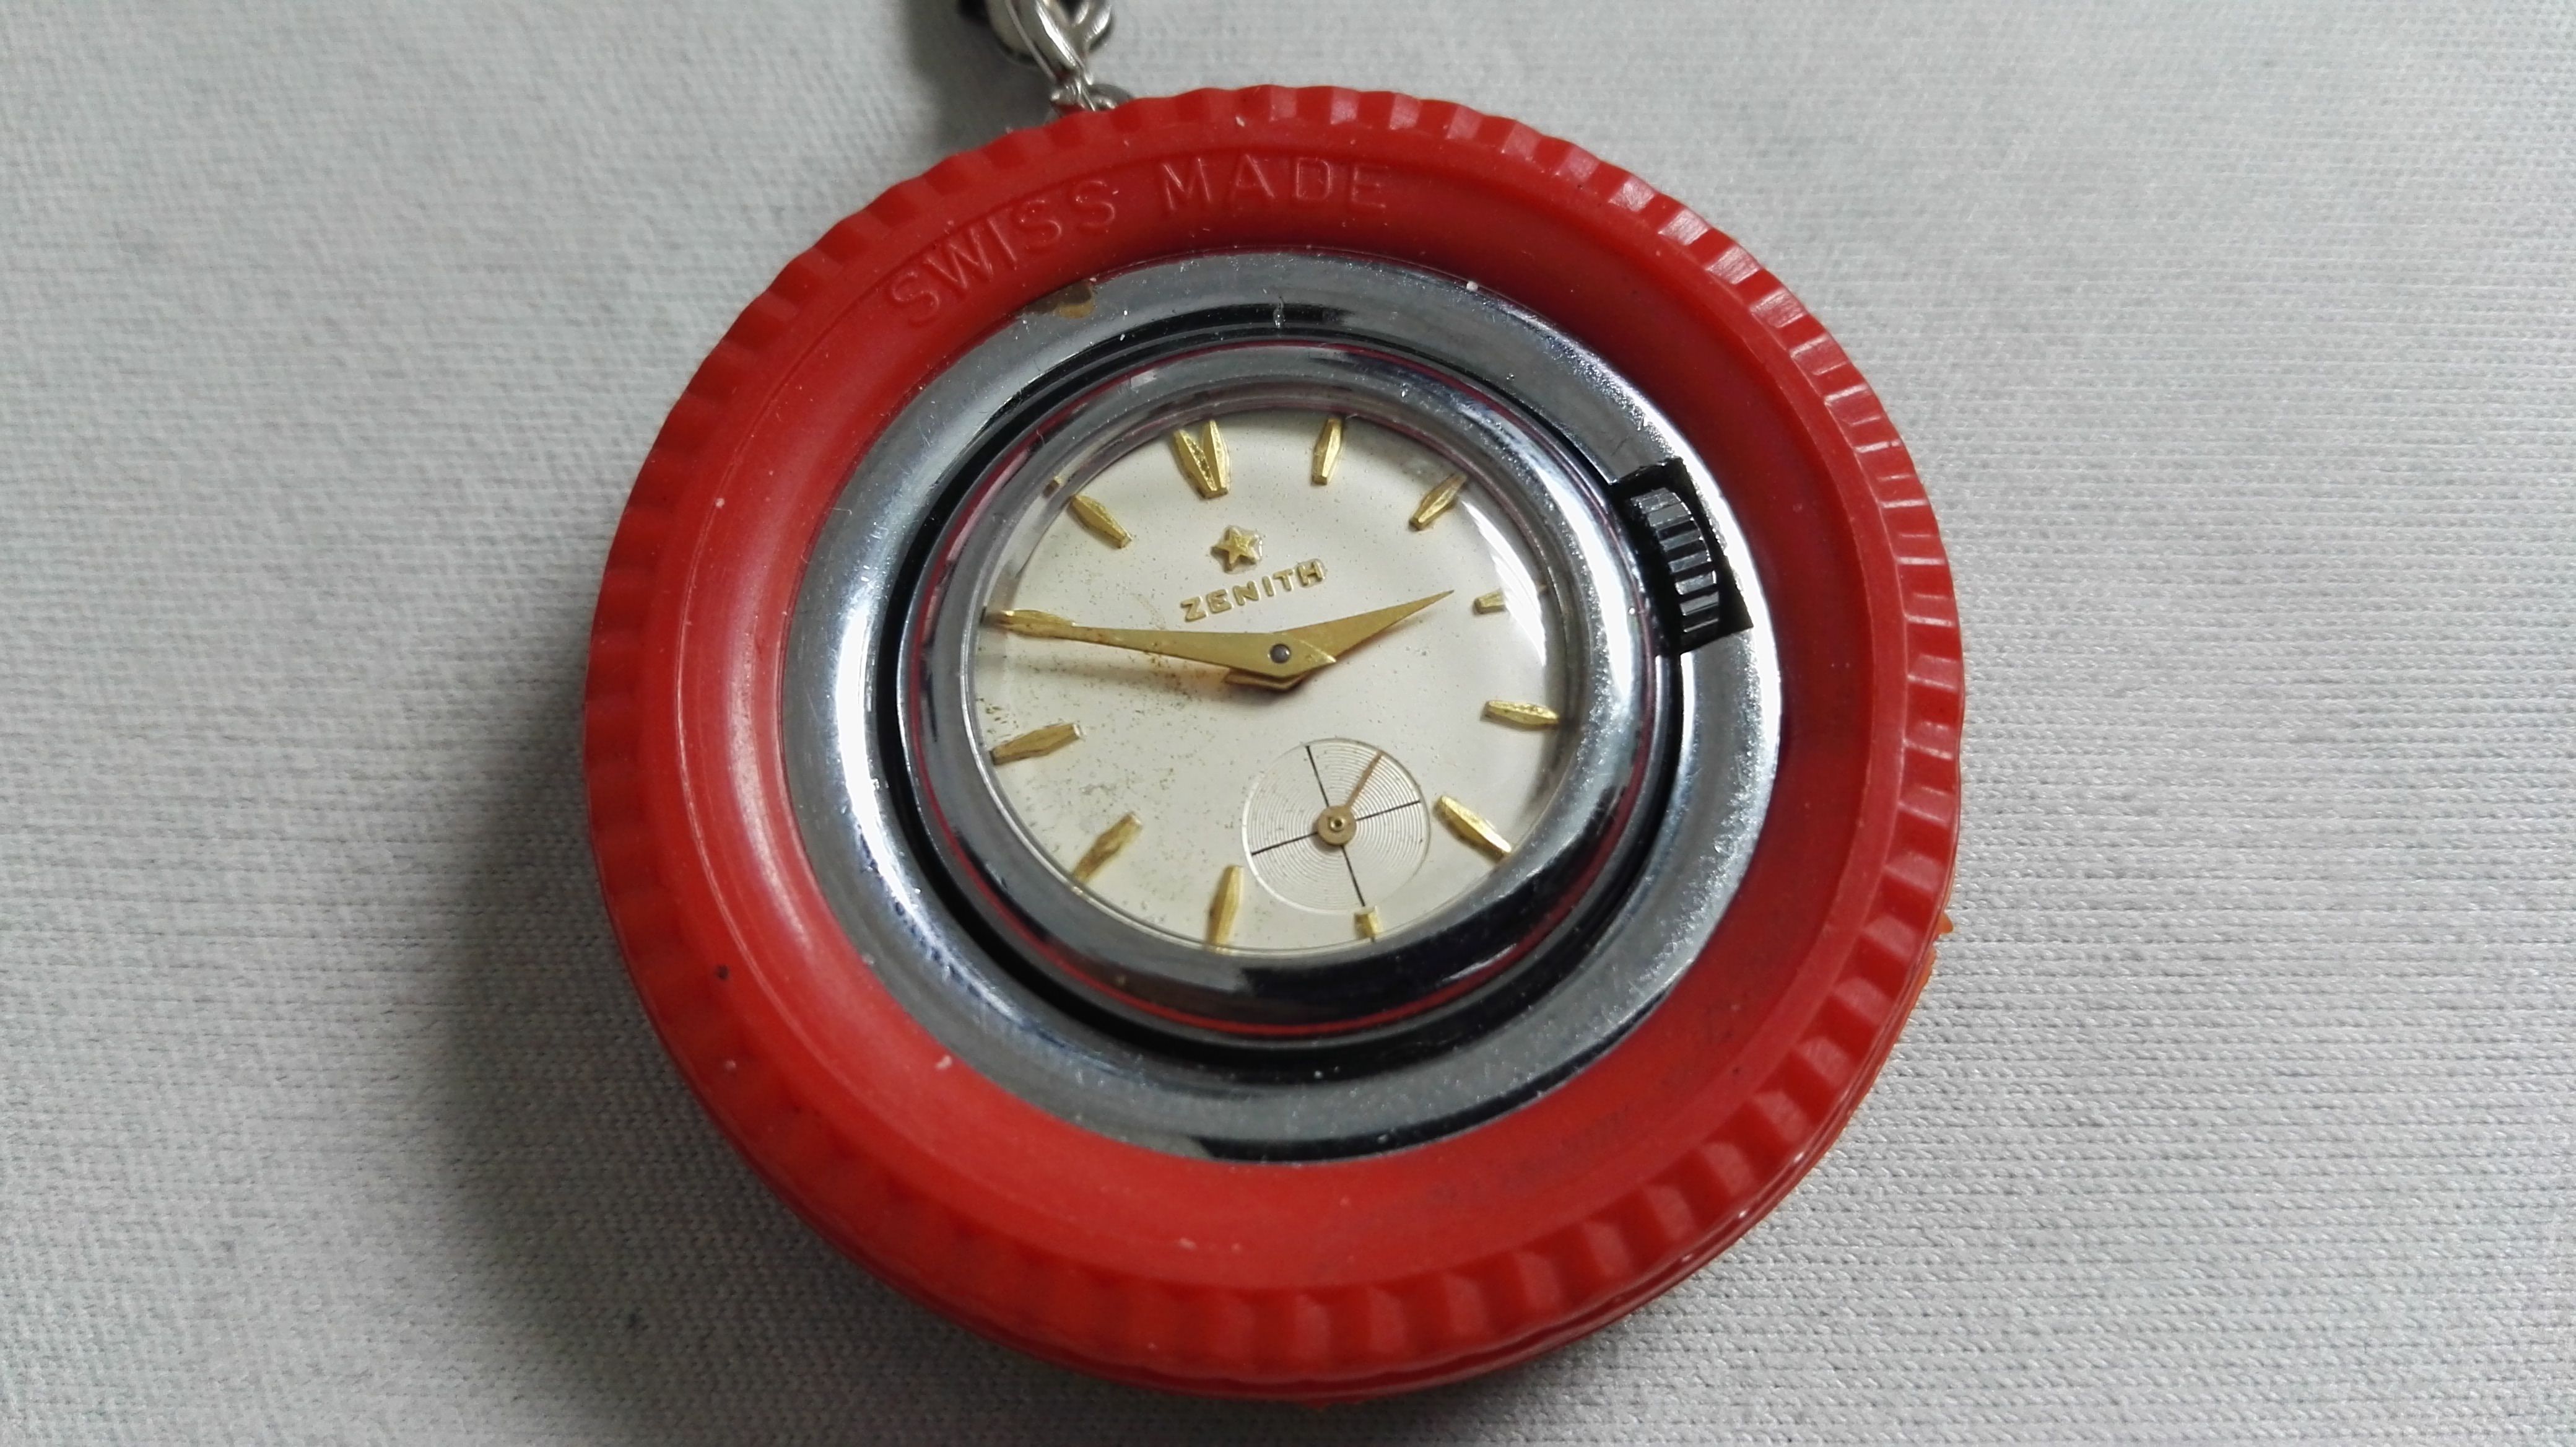 Zenith orologio portachiavi ruotino vintage meccanico manuale | San Giorgio a Cremano